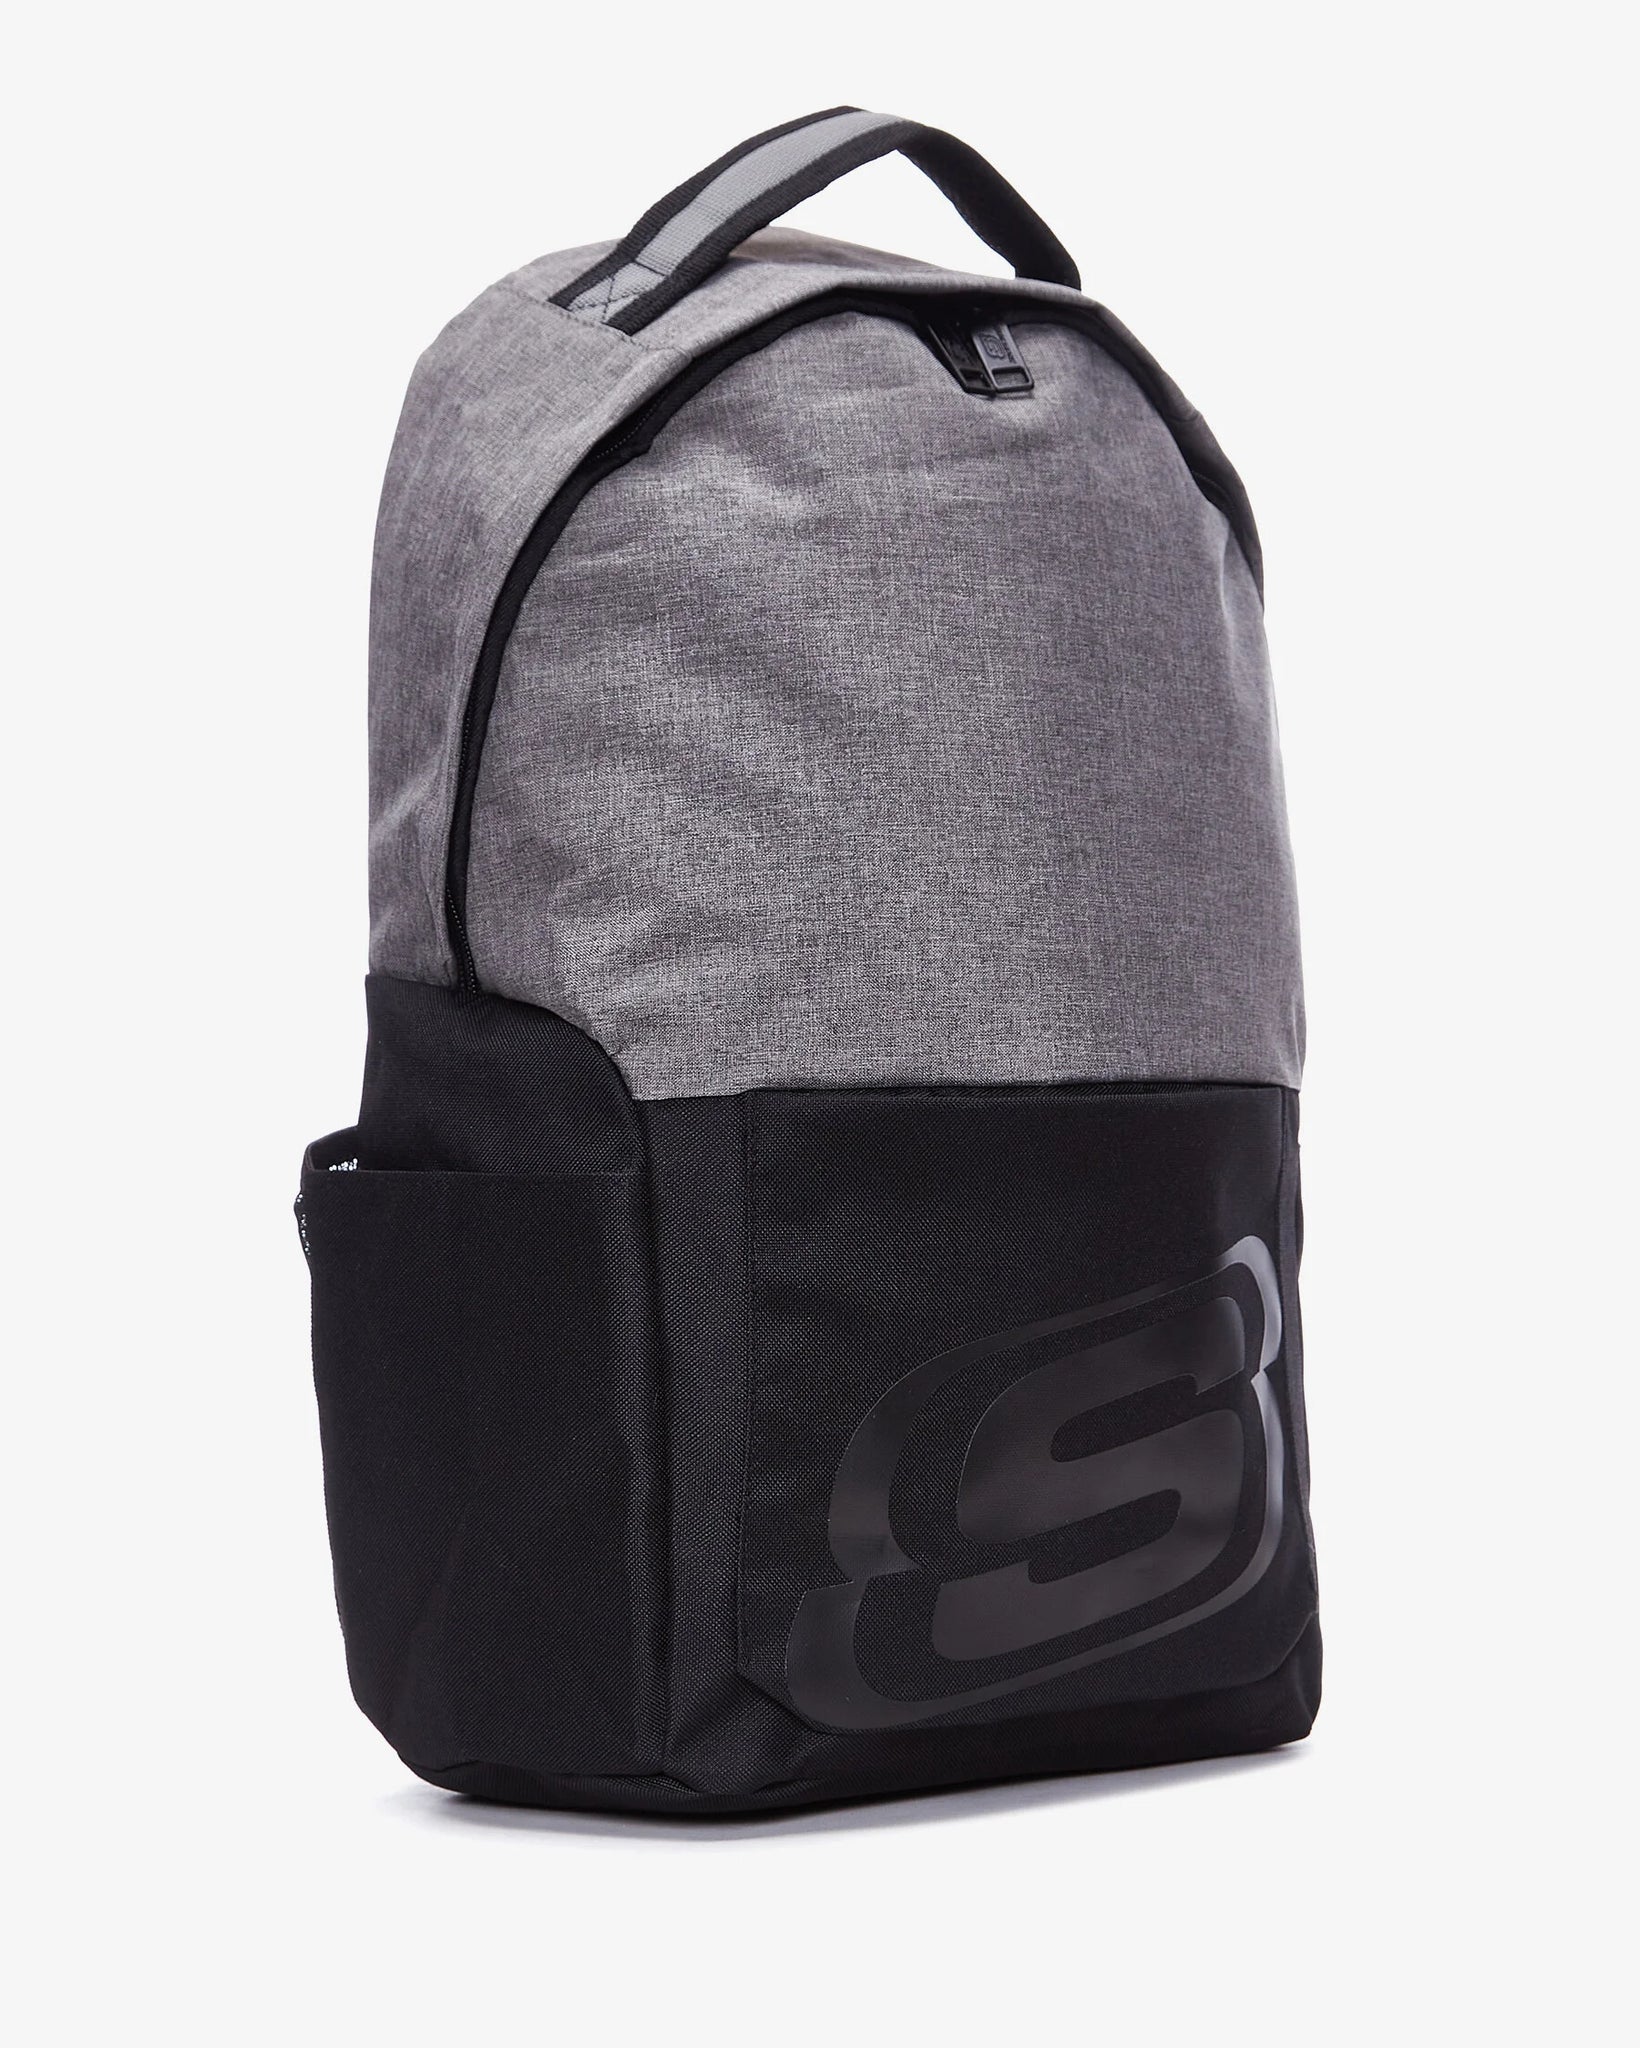 SKCH7681 - Performance Backpack